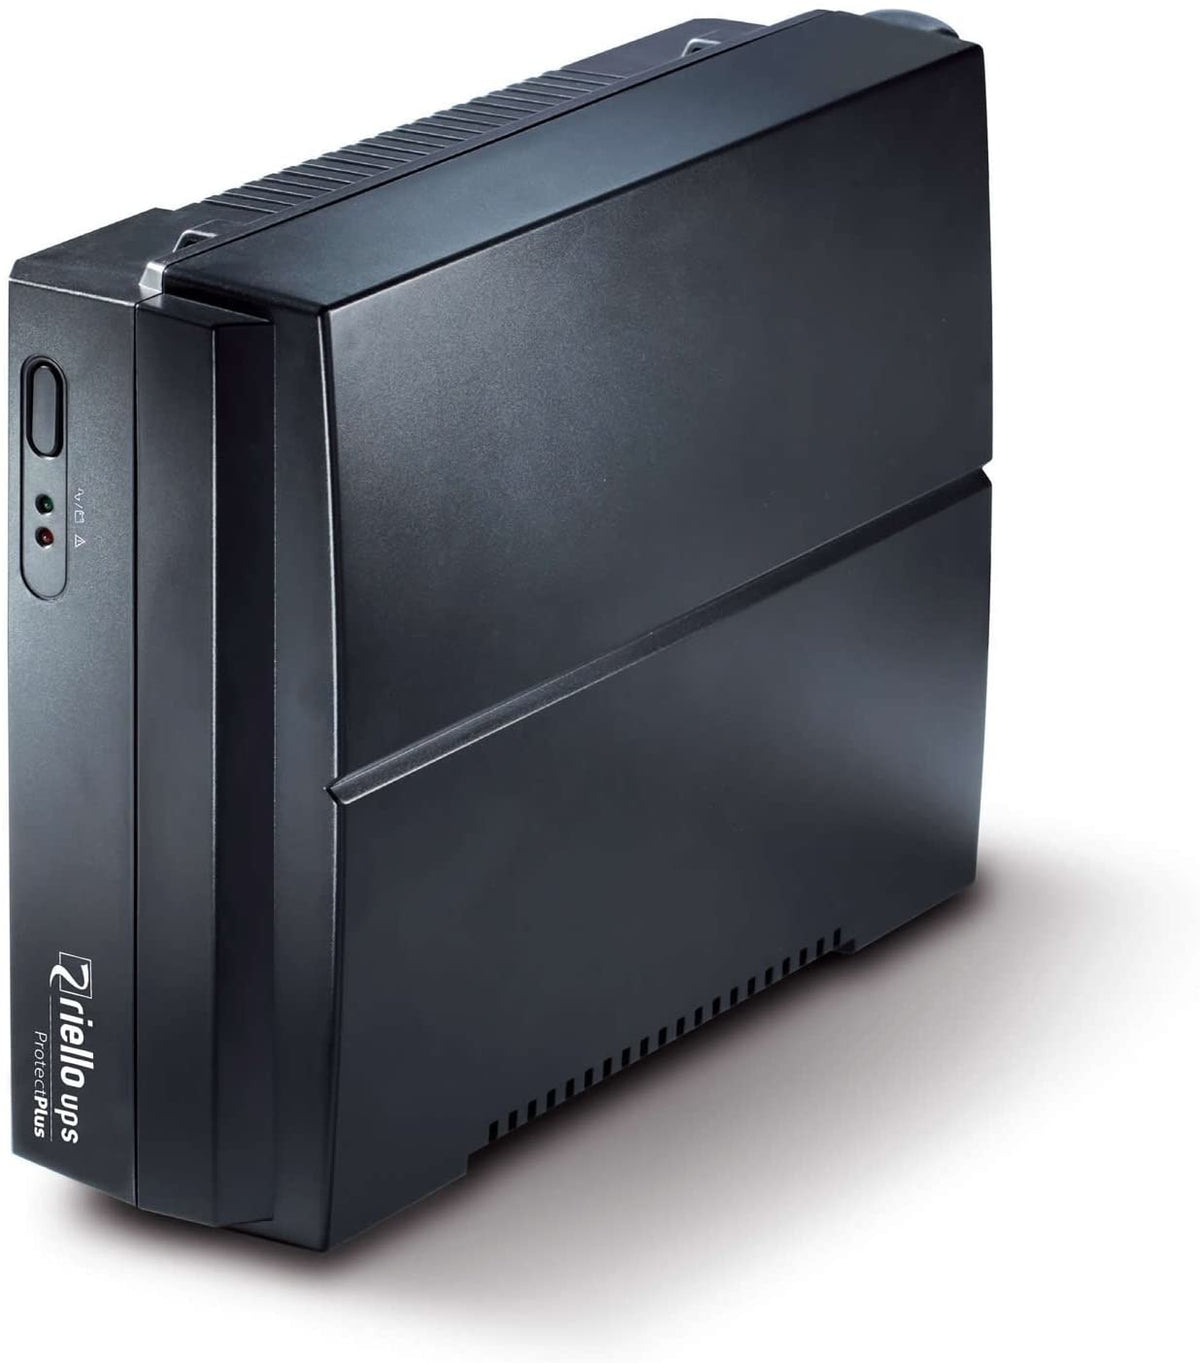 Riello UPS Protect Plus PRP 850 - UPS - AC 220-240 V - 480 Watt - 850 VA - conectores de salida: 2 - negro